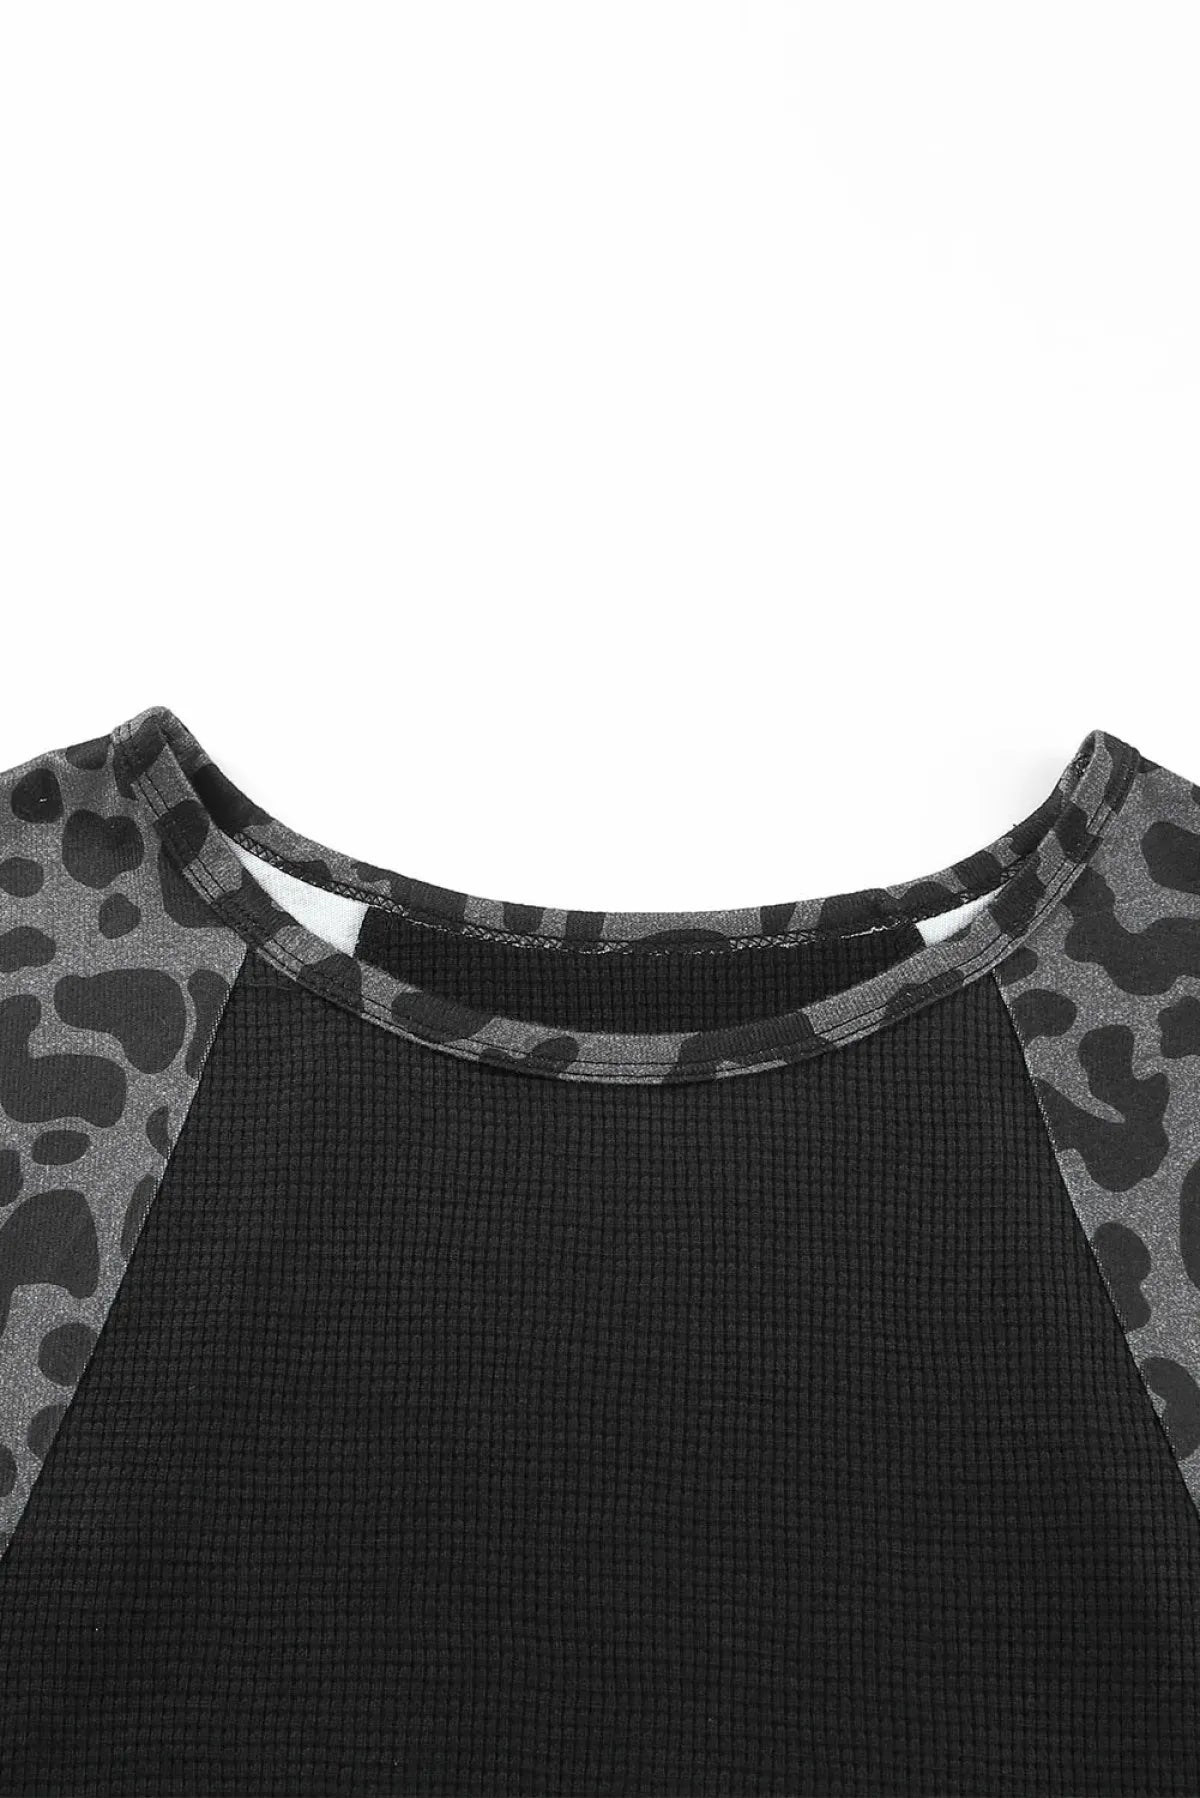 Leopard Raglan Sleeve Waffle Knit Plus Size Top | Art in Aging